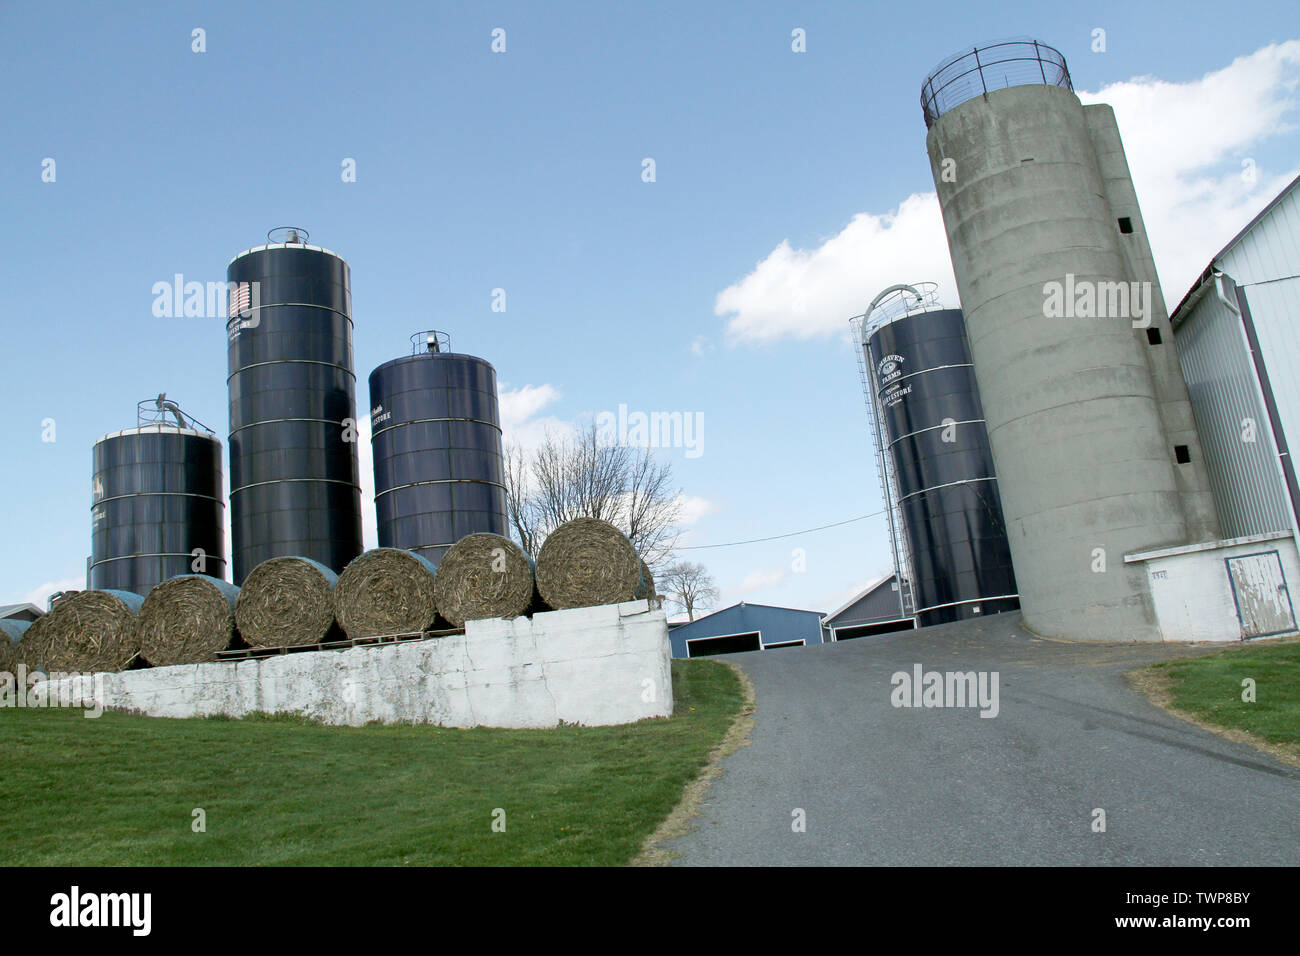 Silos and storage on farm in Pennsylvania, USA Stock Photo